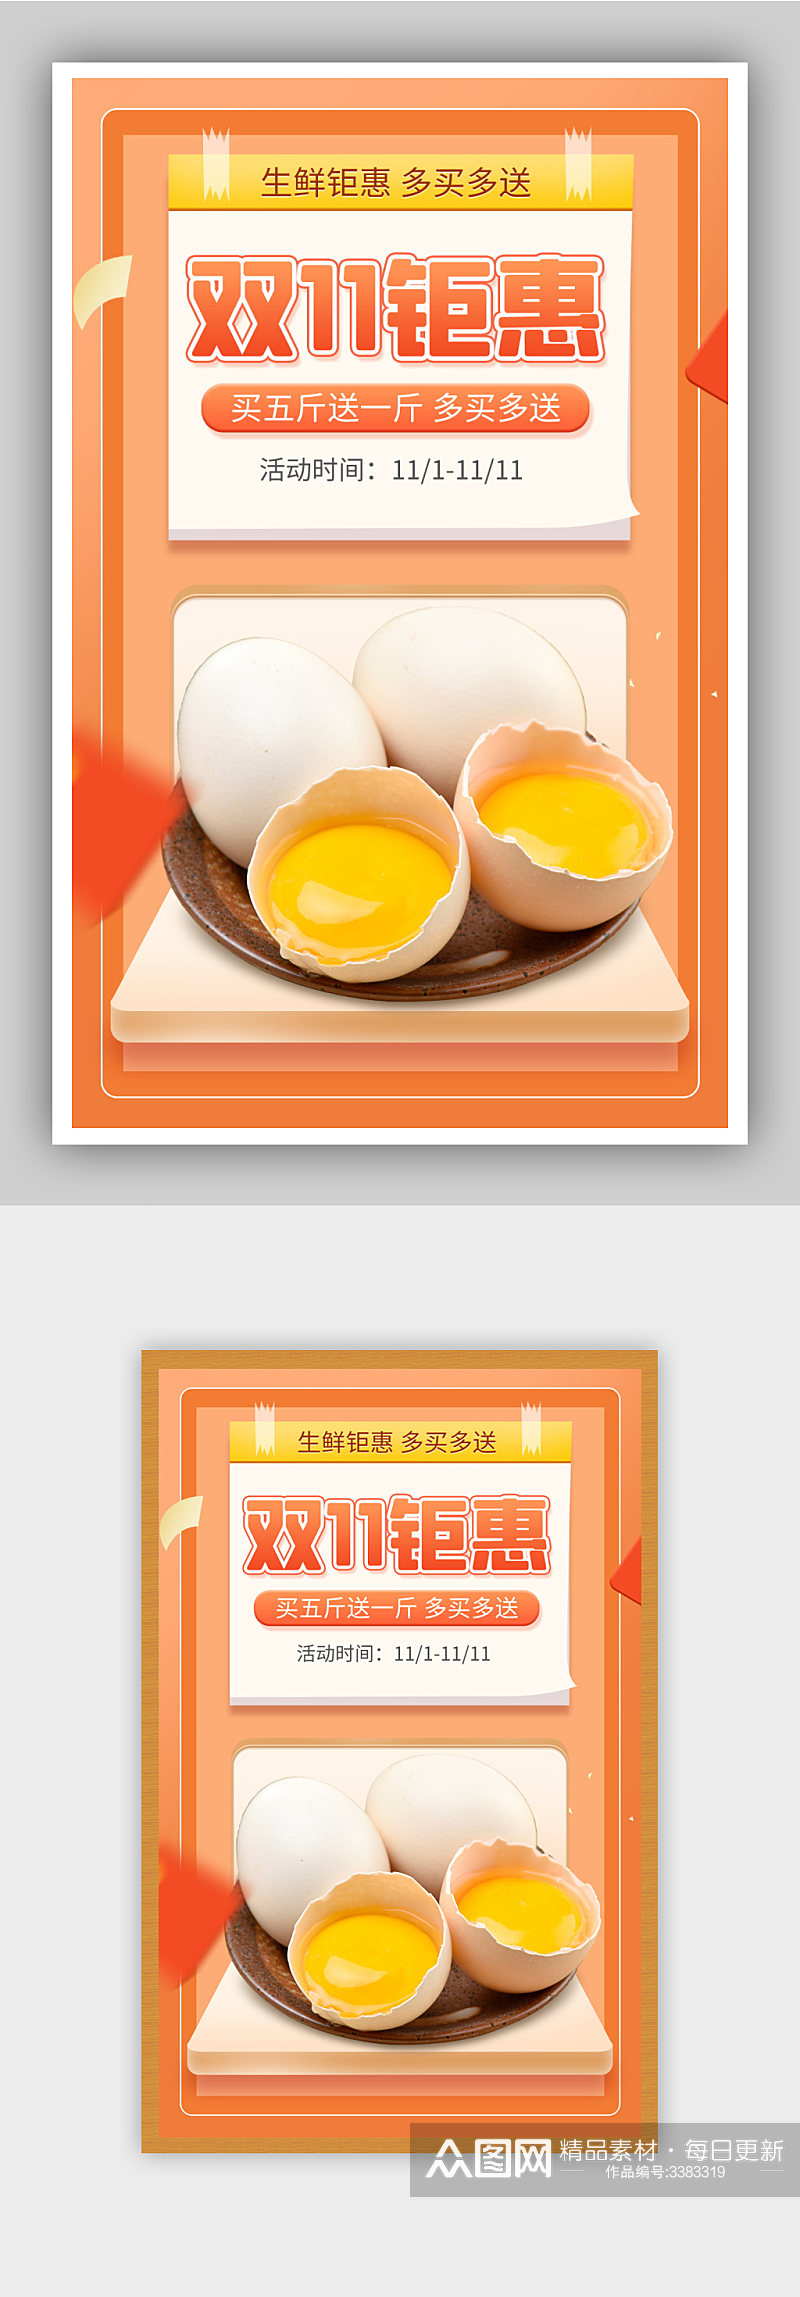 双11生鲜鸡蛋促销黄色简约海报素材